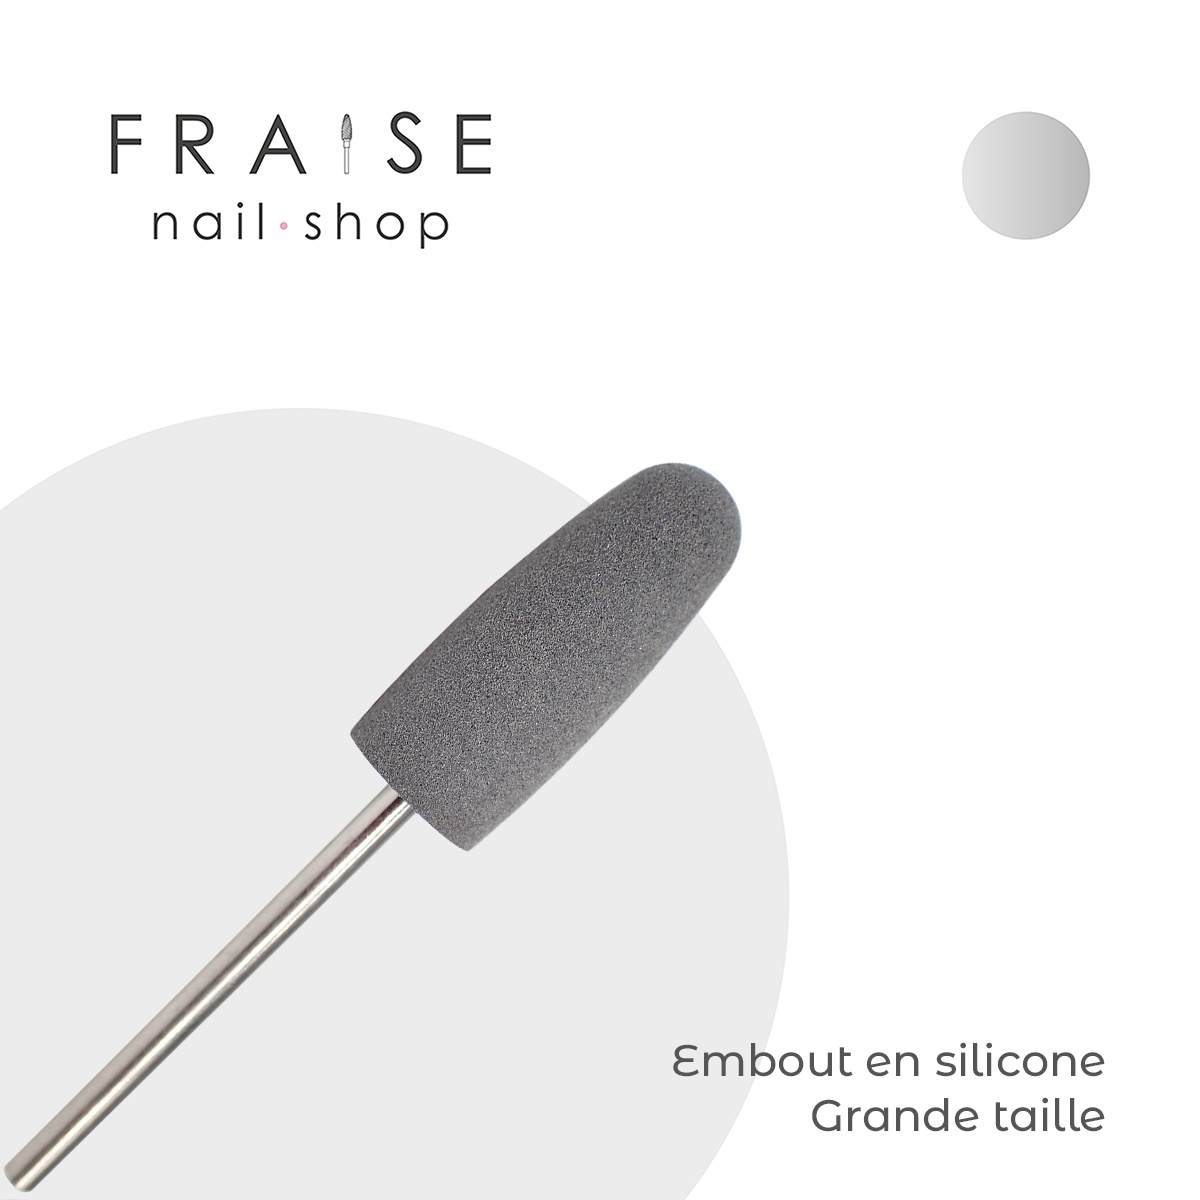 Embout en silicone pour gommer les peaux - Grand - Fraise Nail Shop